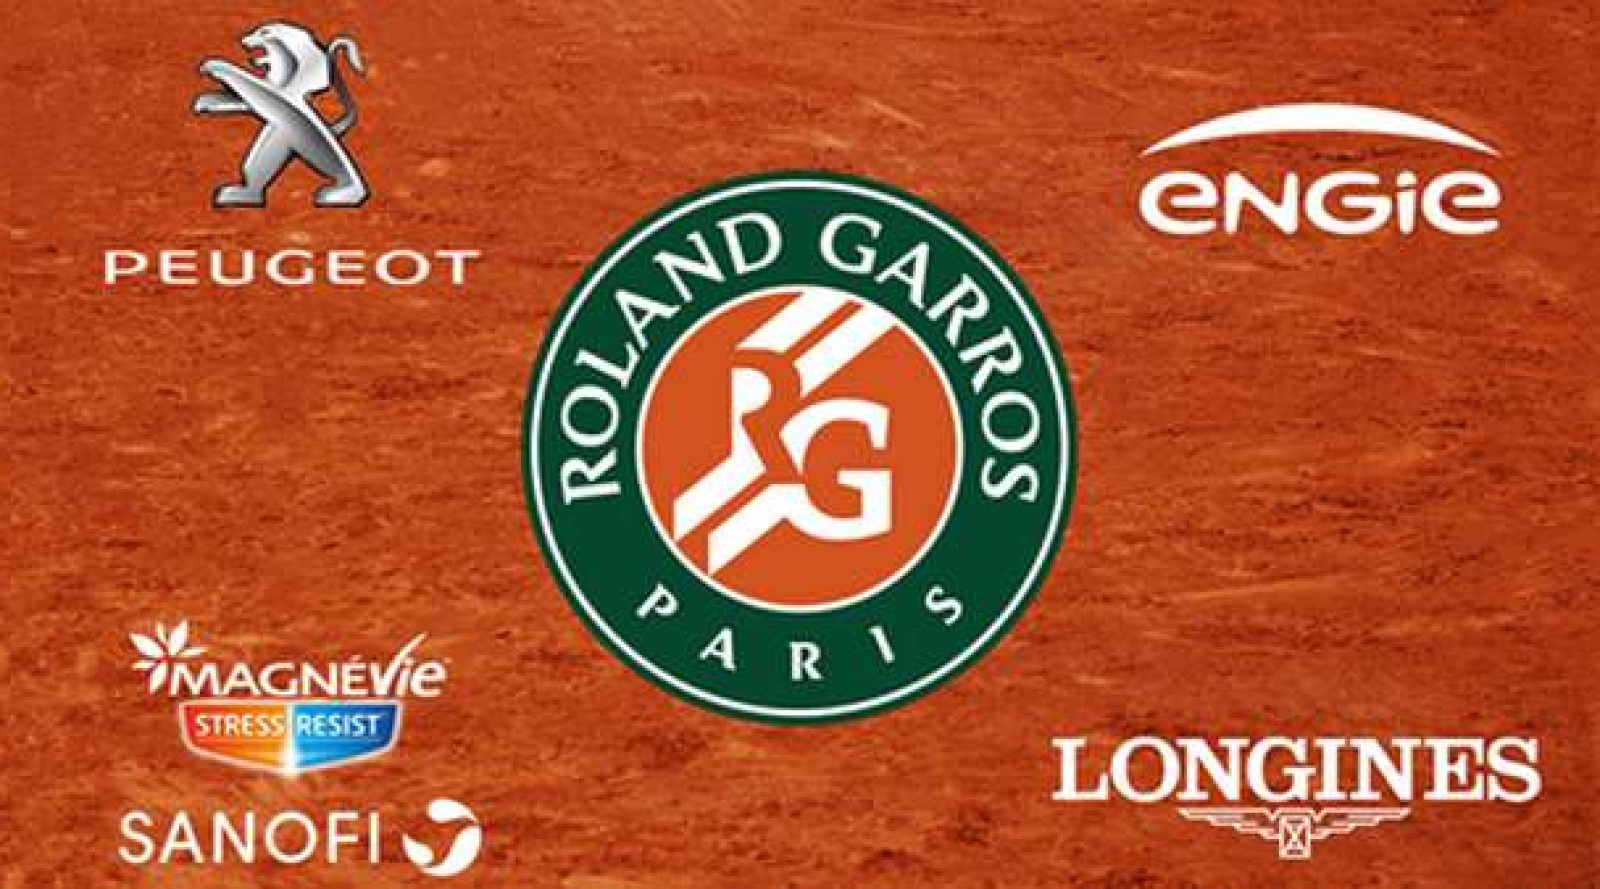 Roland Garros : 4 parrains officiels sur France Télévisions - Image